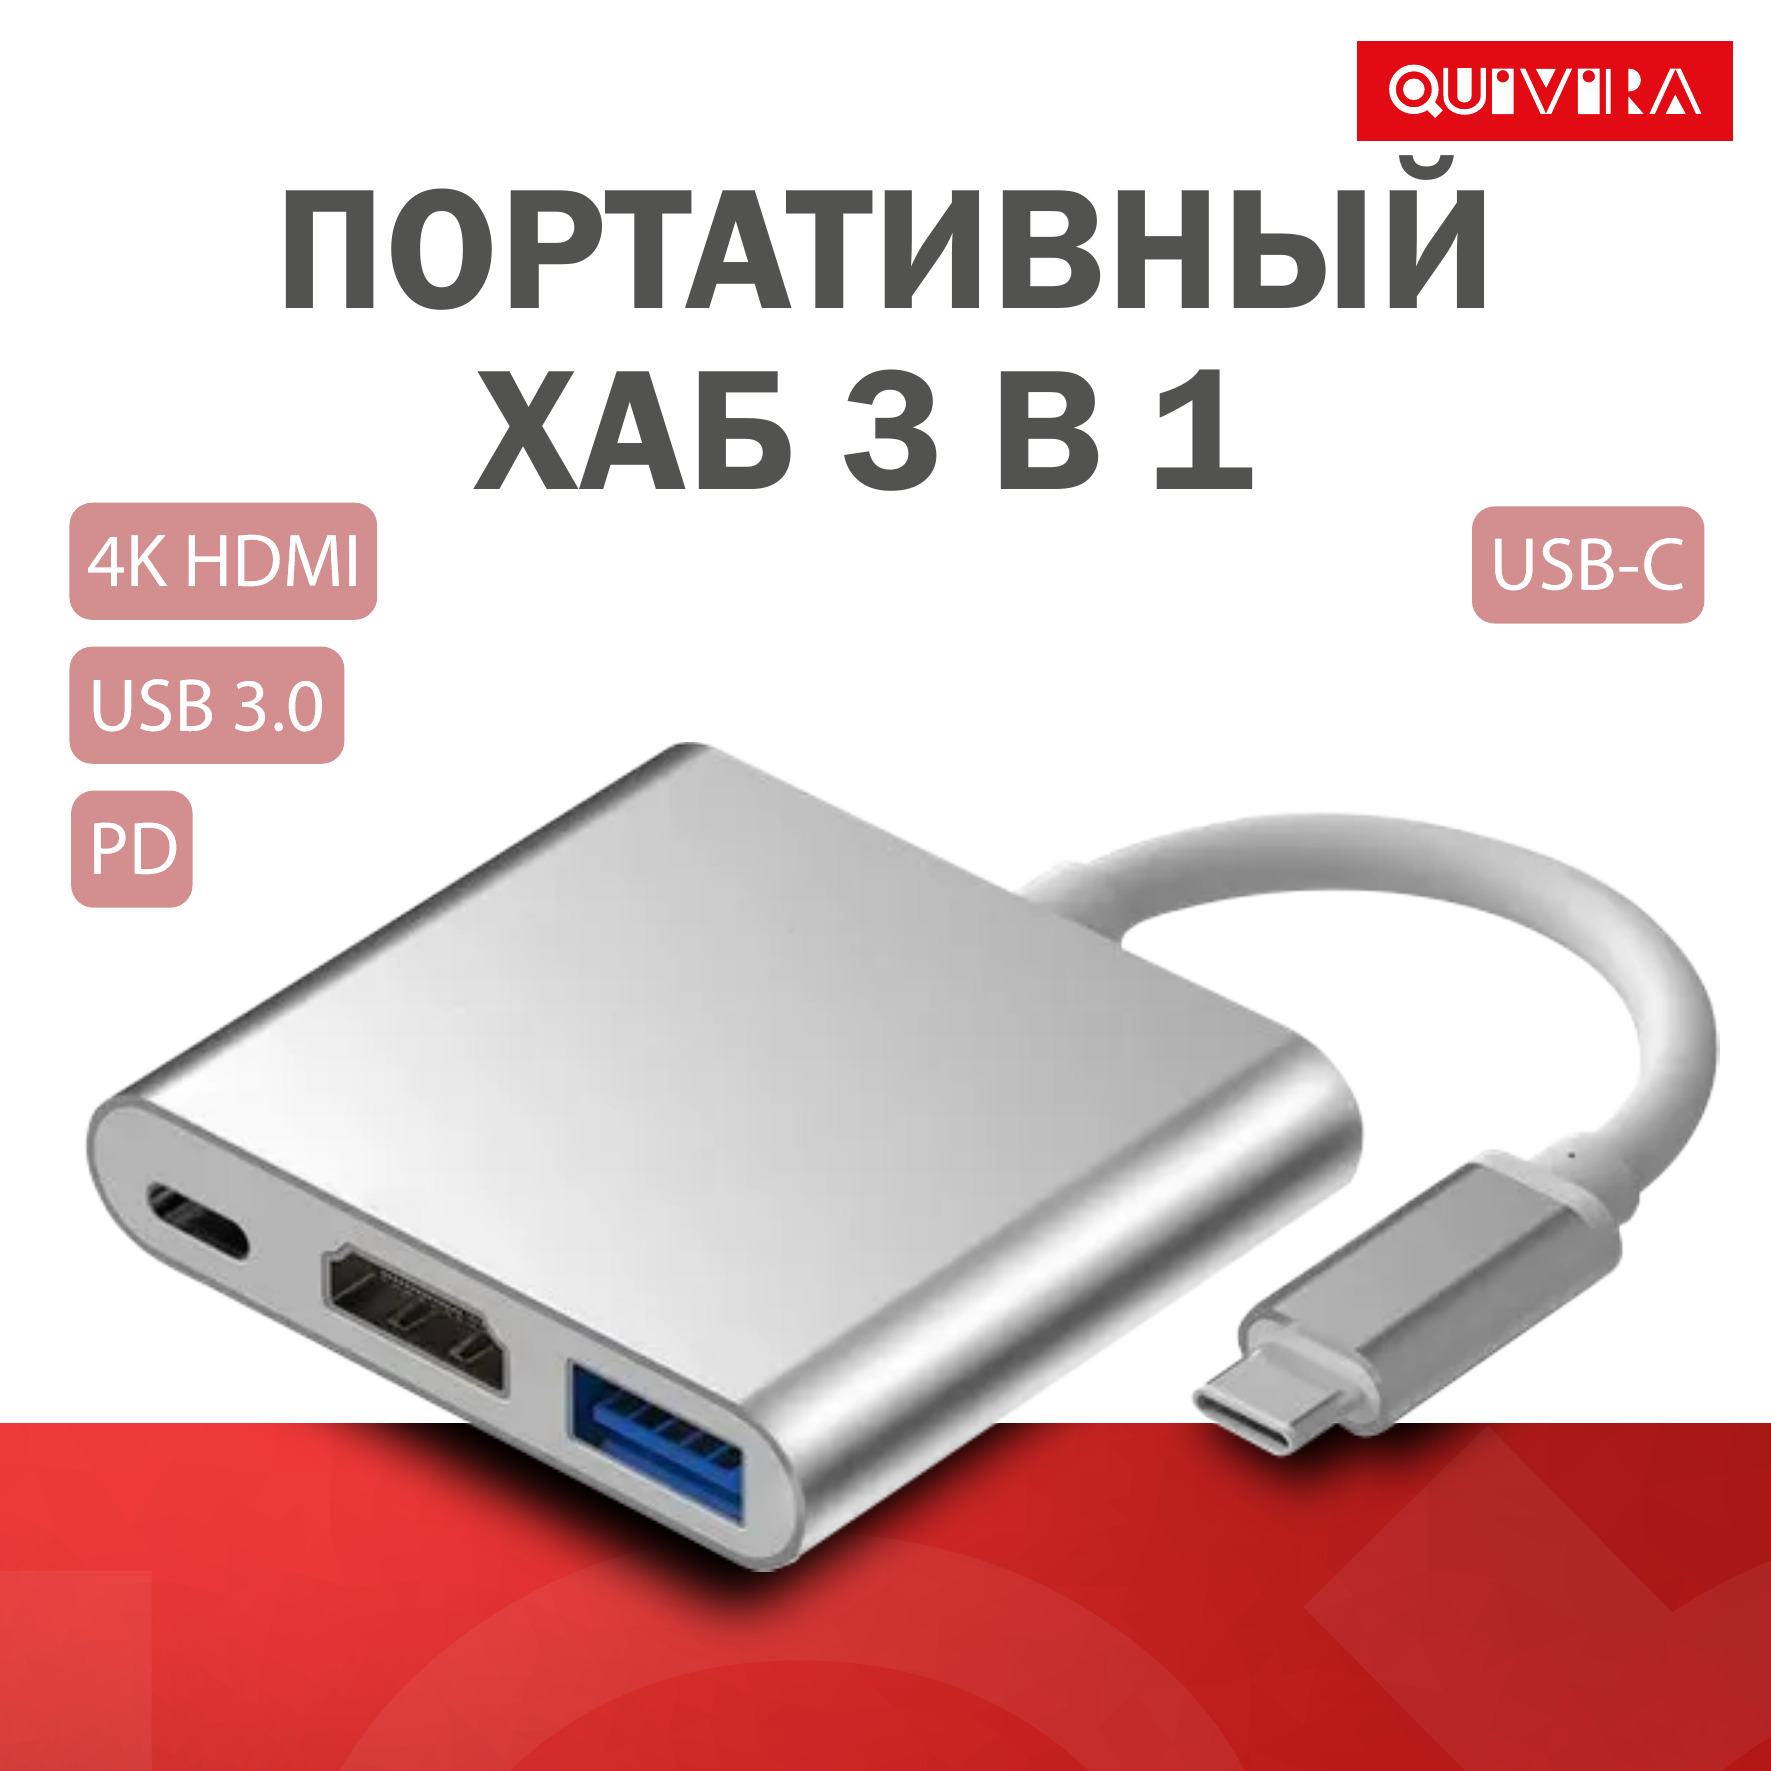 USB-концентратор QUIVIRA Портативный HUB 3 в 1 C на 4K HDMI - 3.0 - Type-С - фото 4